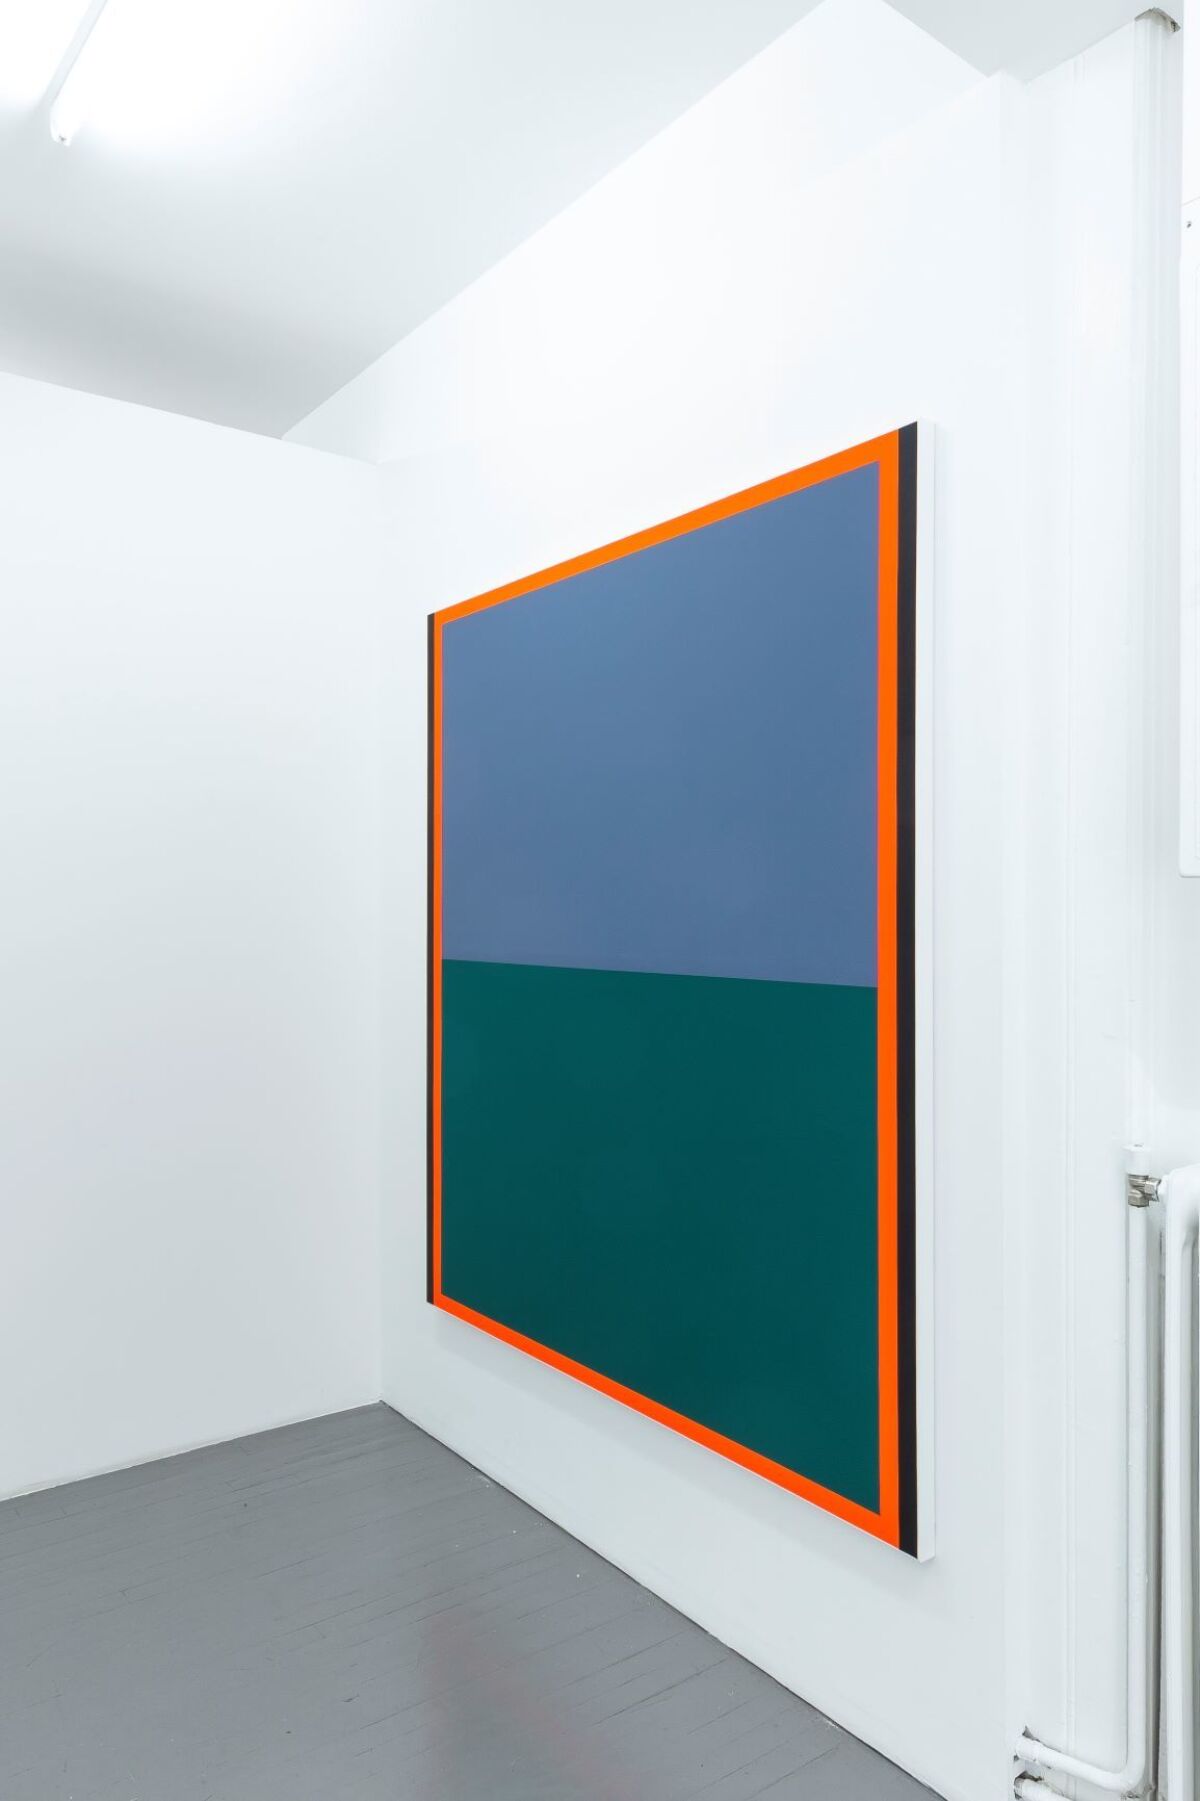 Et blått og grønt maleri med oransje ramme rundt henger på en hvit vegg. Foto.